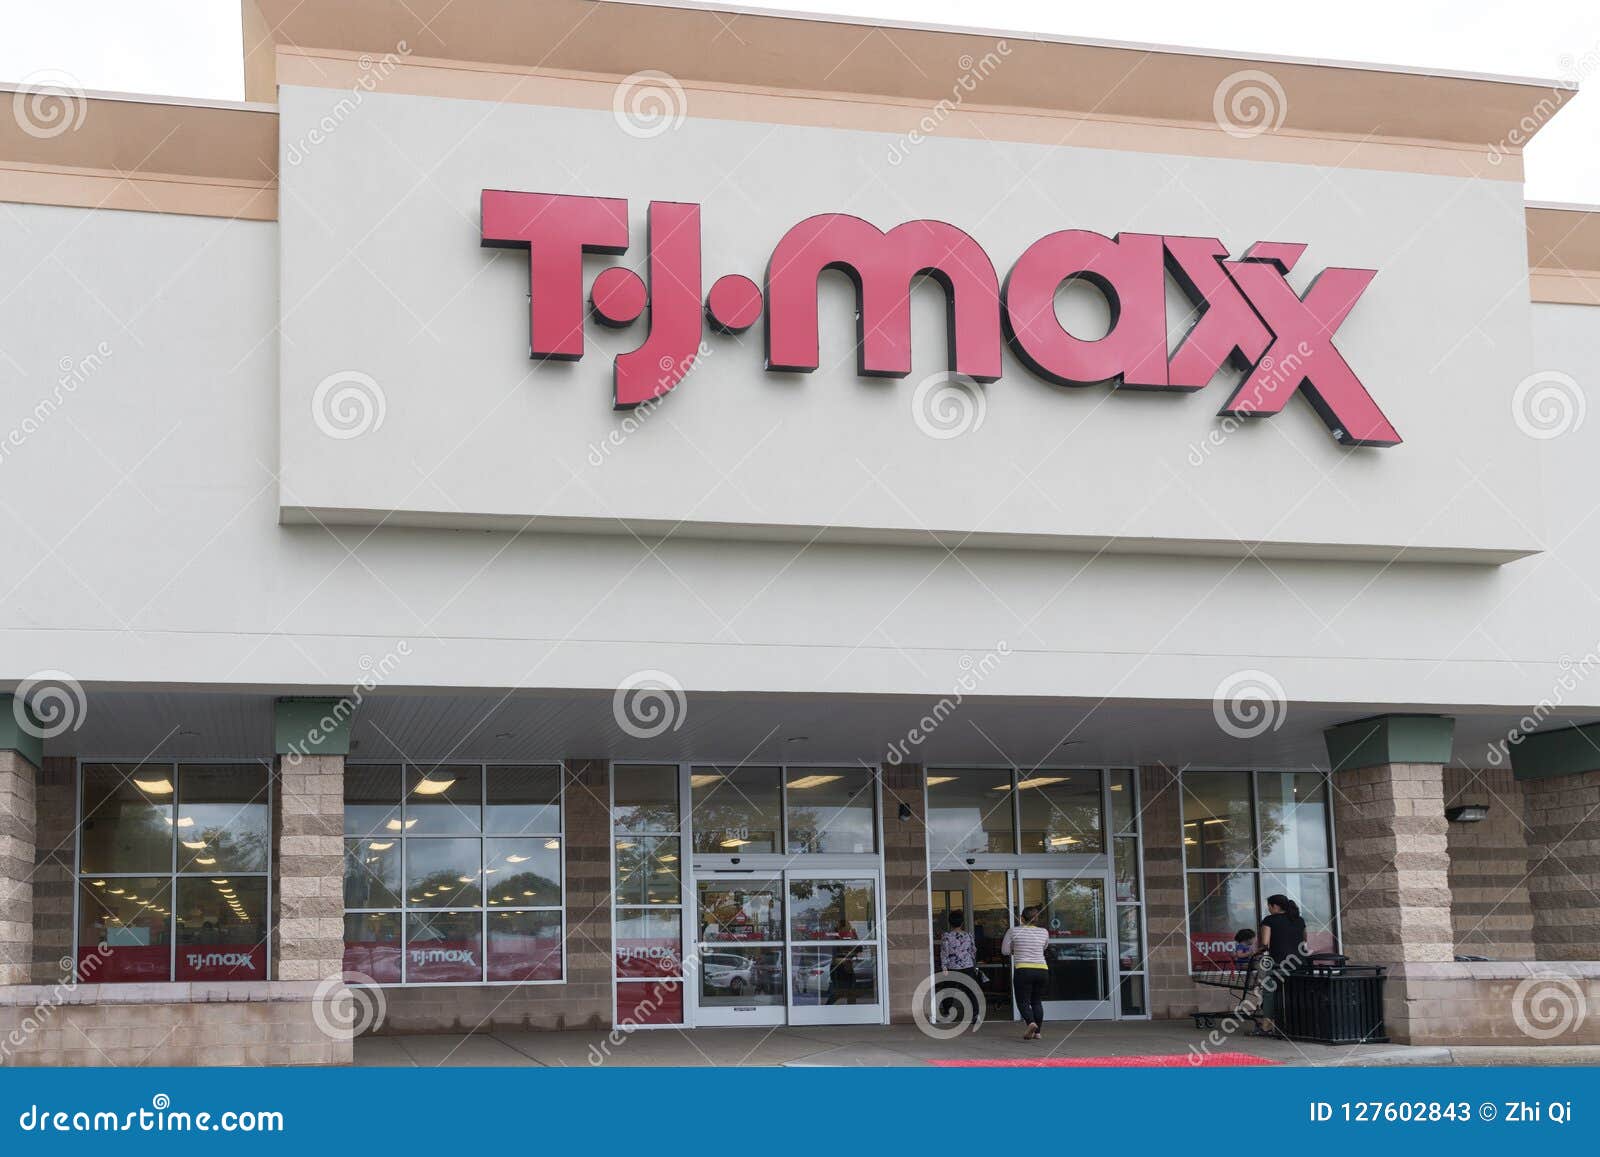 Store Locator - T.J.Maxx